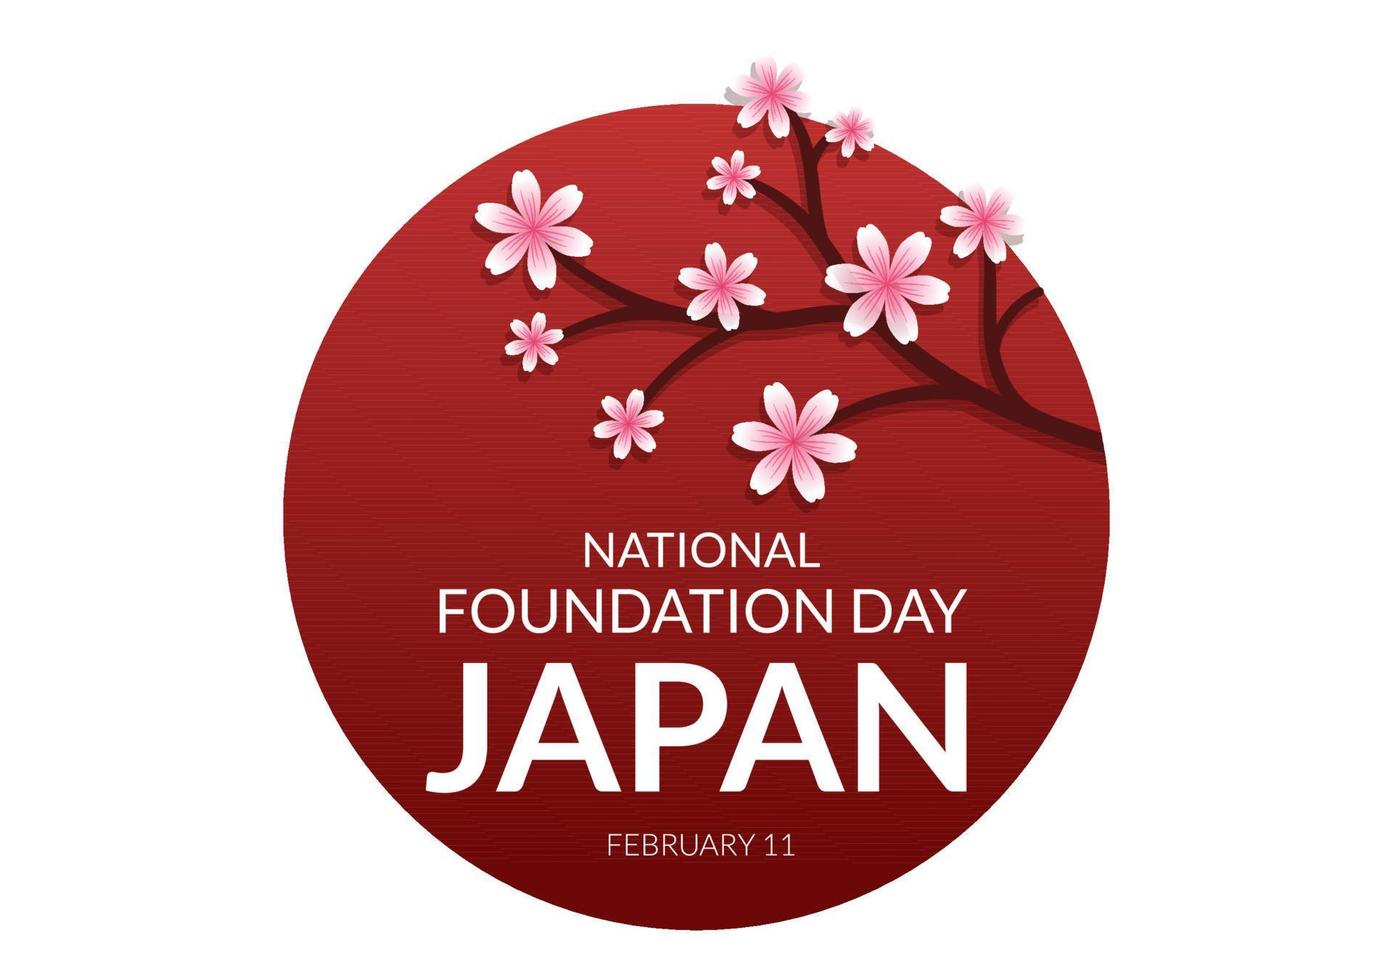 feliz dia da fundação nacional do japão em 11 de fevereiro com famosos marcos japoneses e bandeira na ilustração de modelos desenhados à mão de desenhos animados de estilo simples vetor